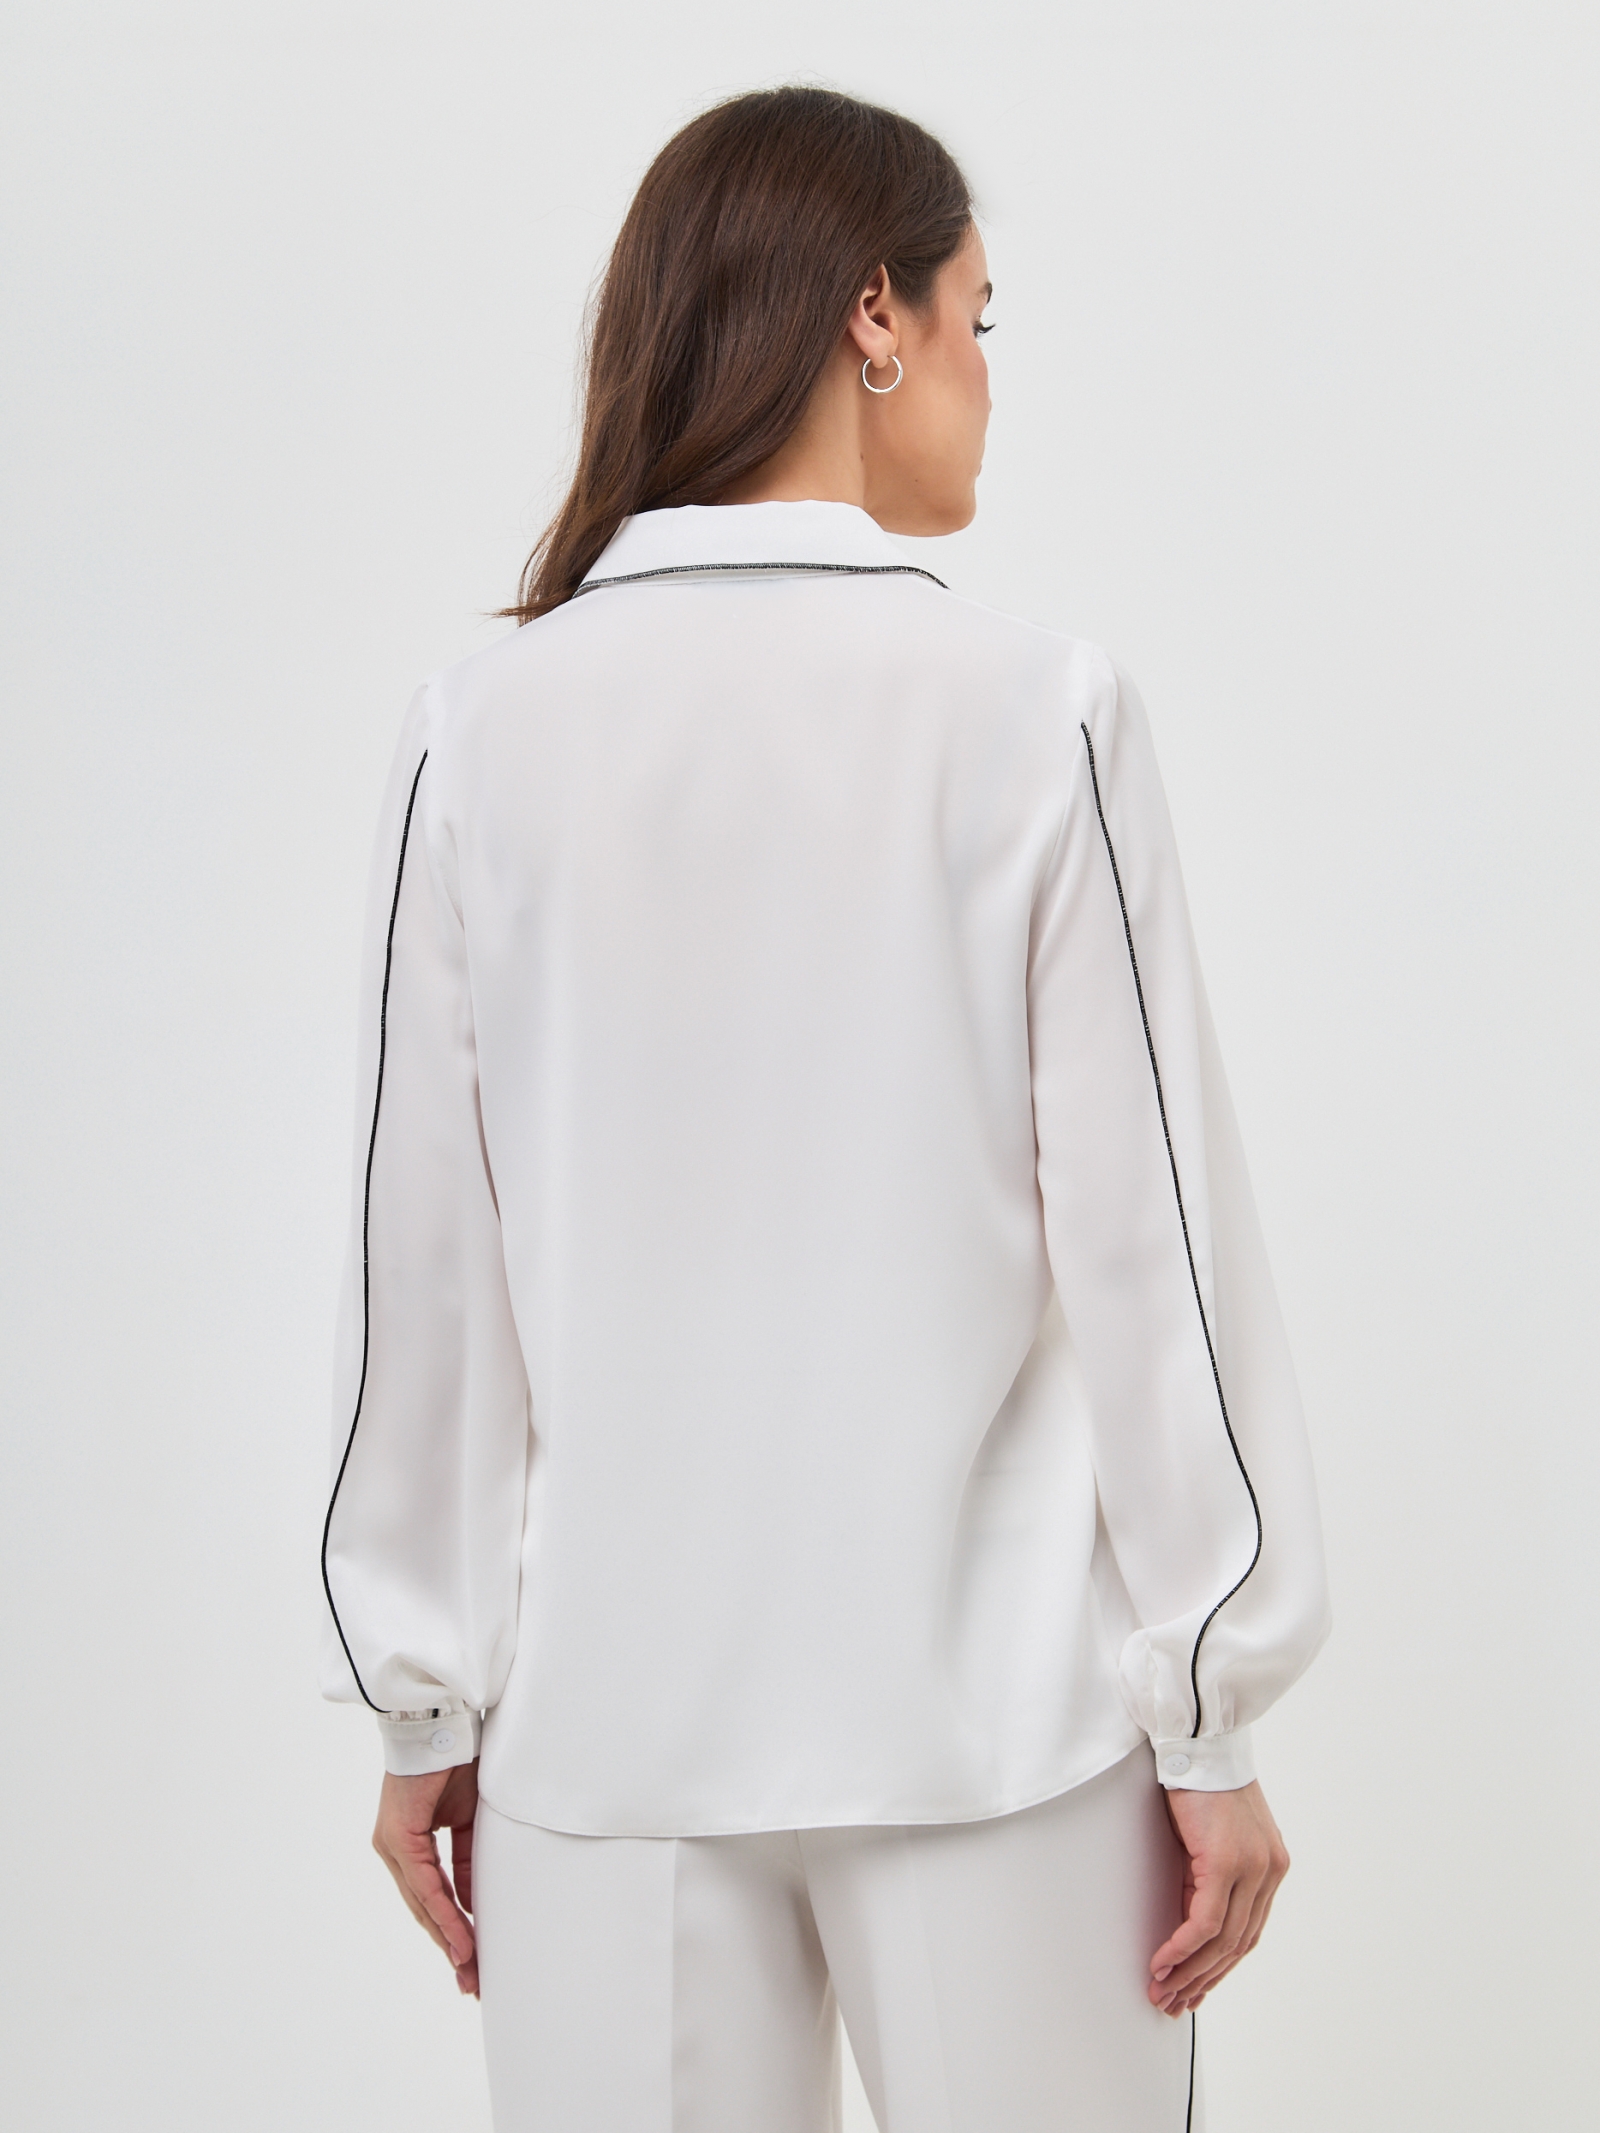 Блузка с контрасной строчкой OD-871-1 белый